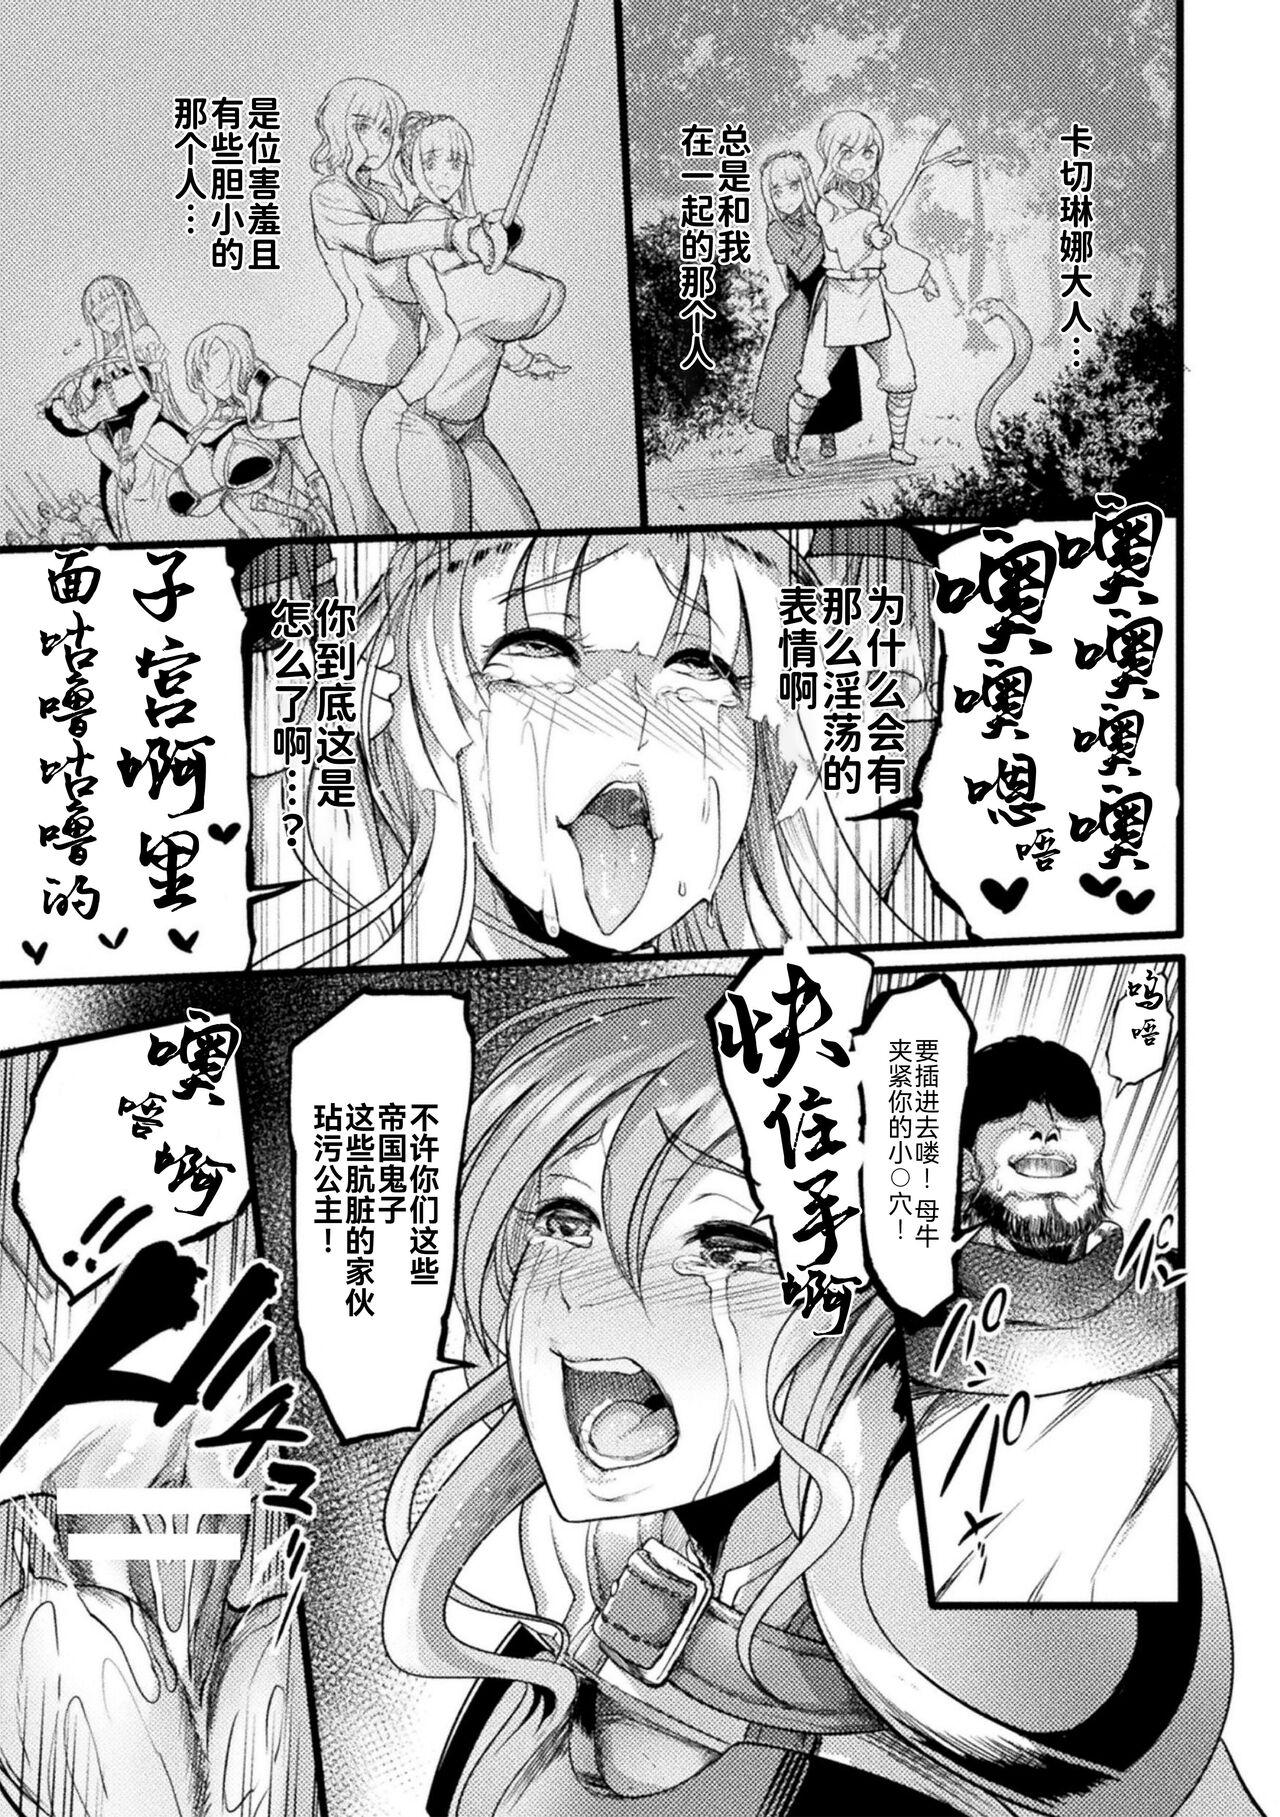 Nena 2D Comic Magazine Nikubenki Koujou Vol. 1 Smalltits - Page 10